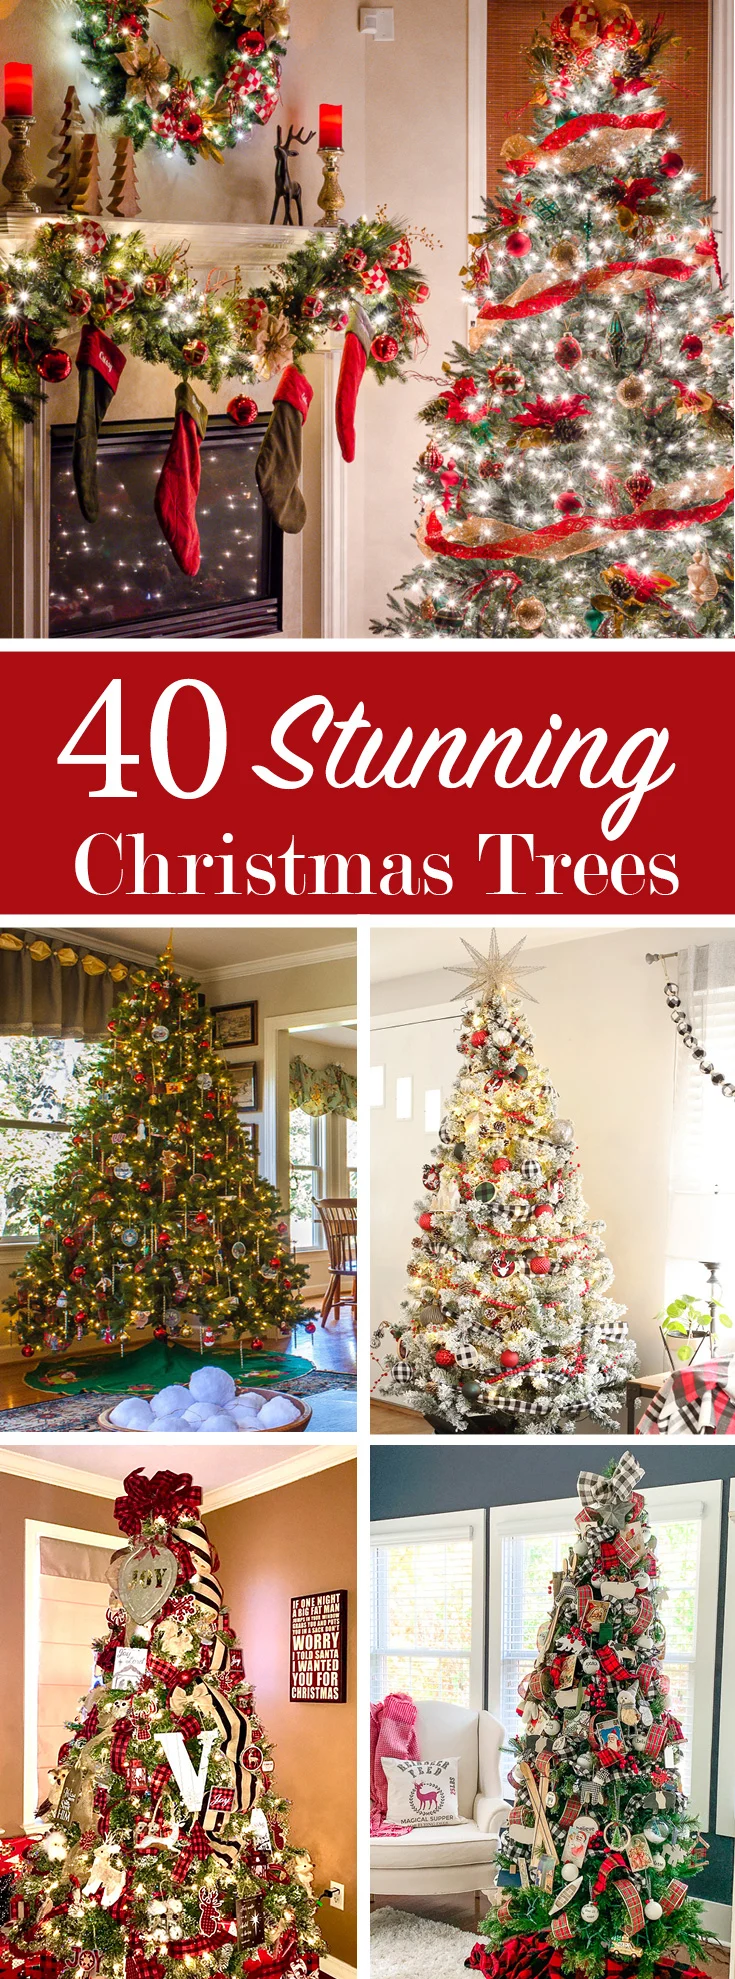 40_Stunning_Christmas_Trees_pin